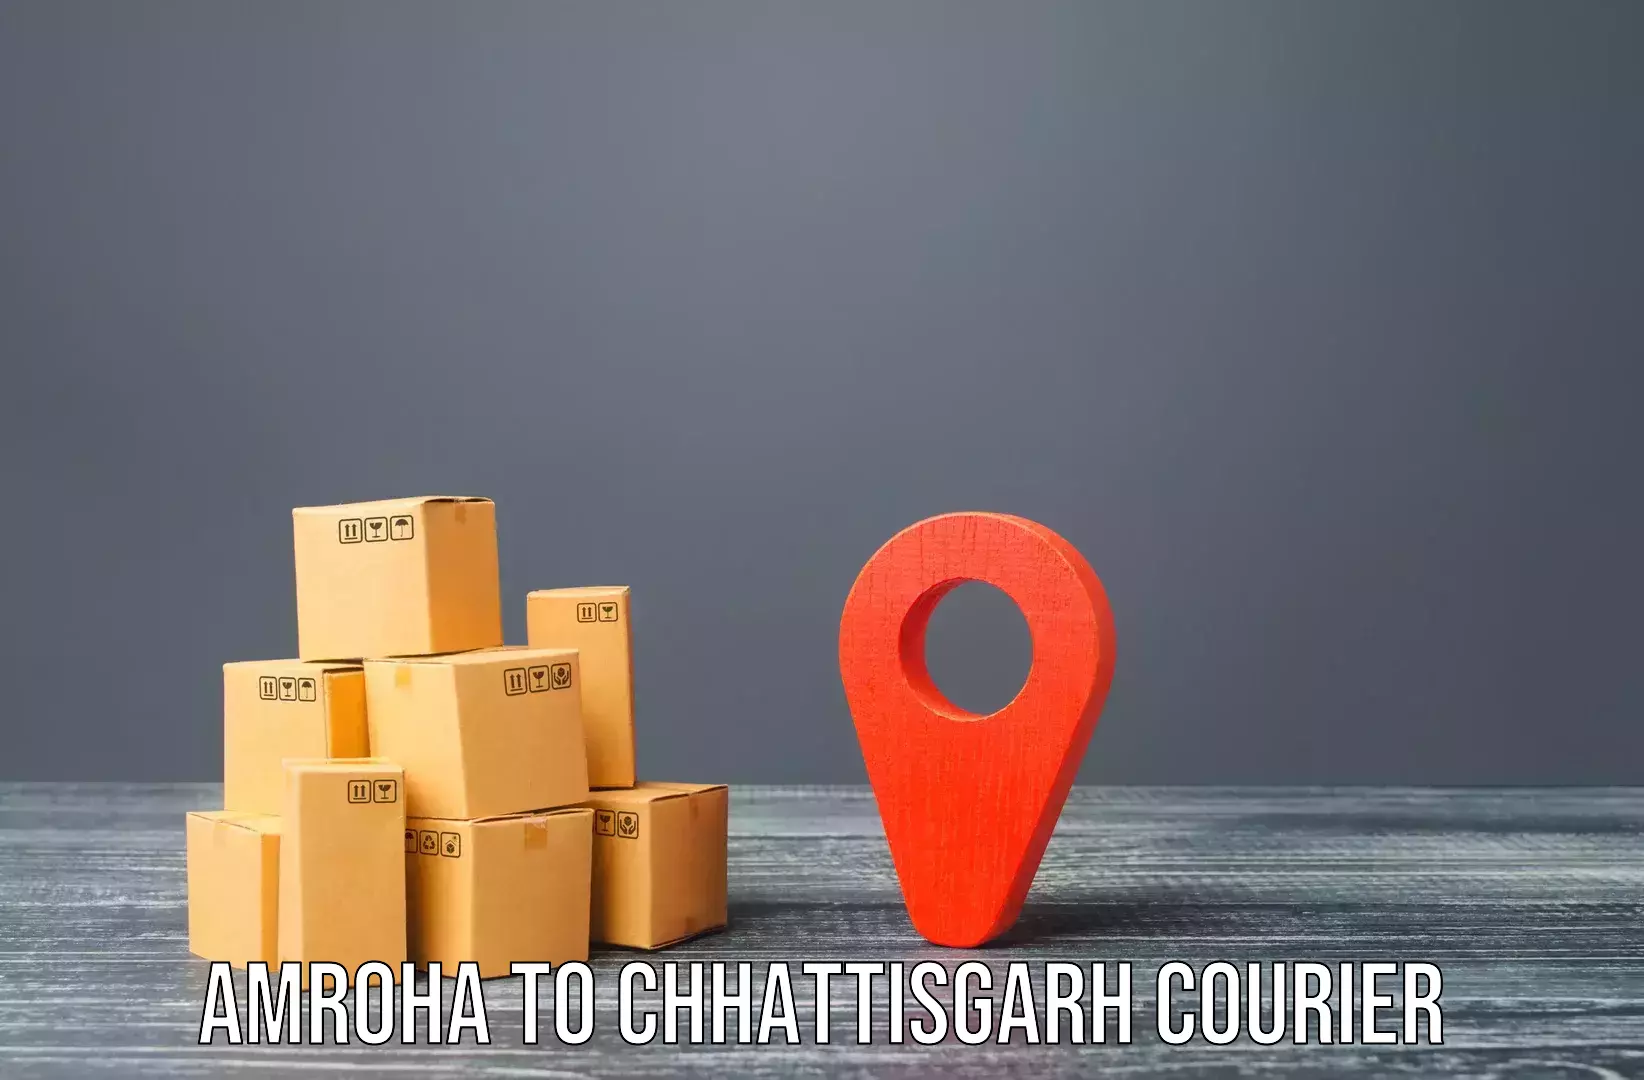 Seamless moving process Amroha to Chhattisgarh